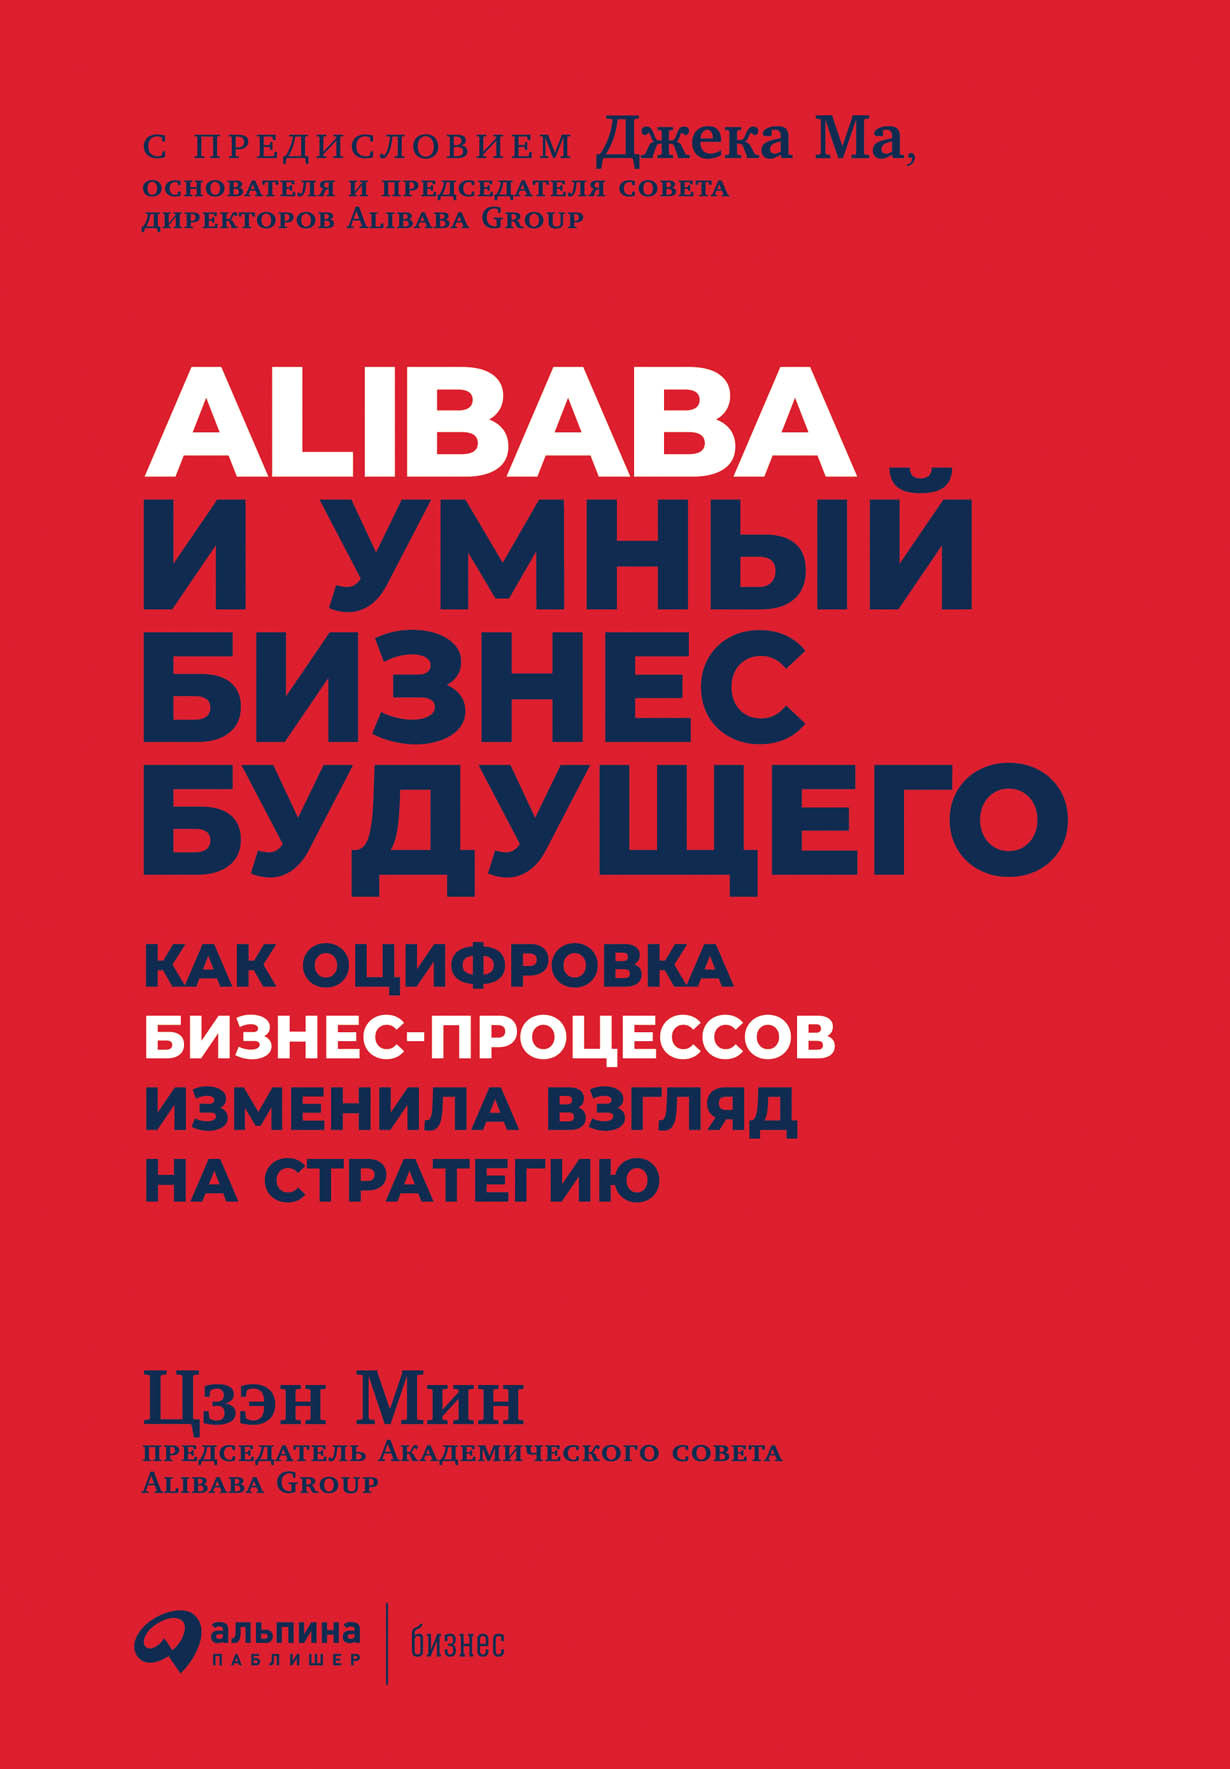 Alibaba и умный бизнес будущего обложка.